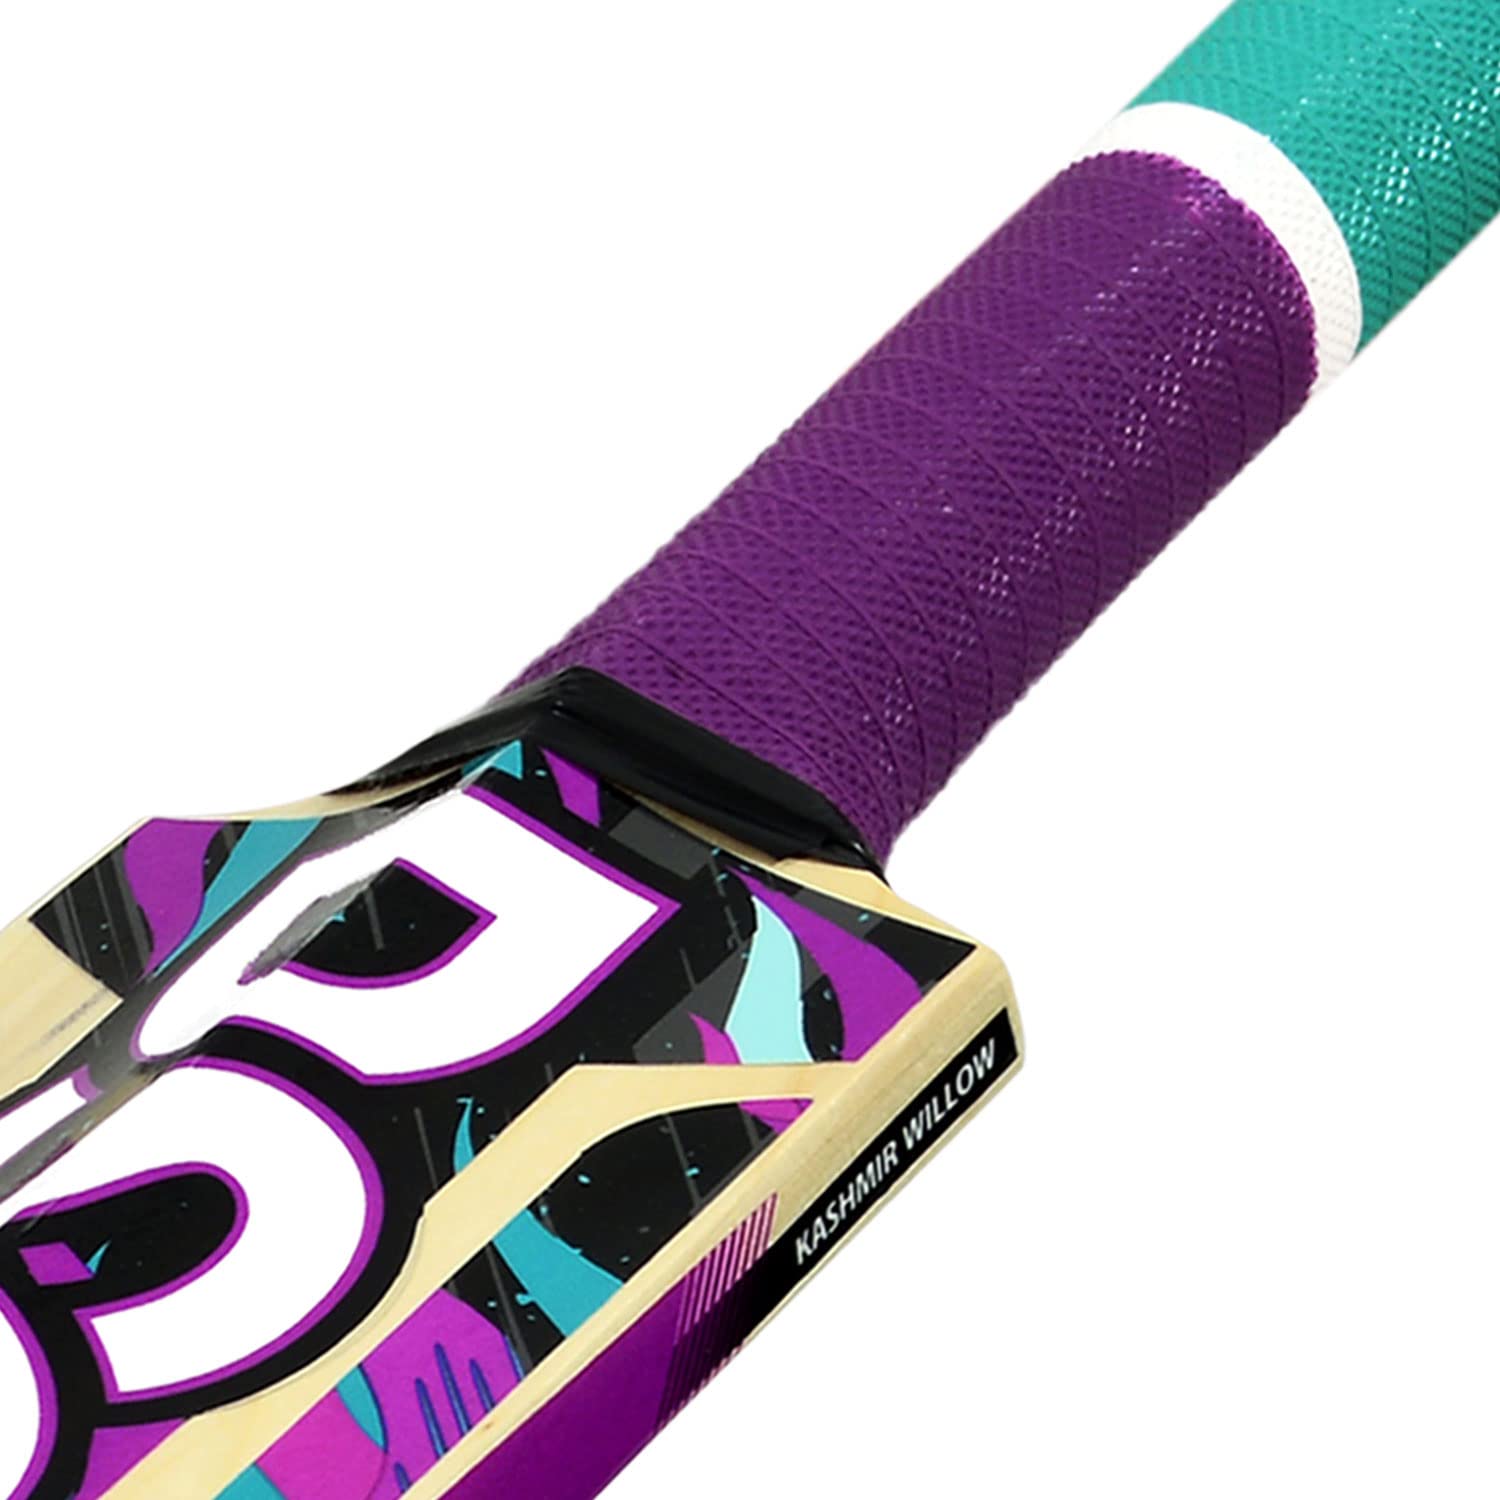 DSC Wildfire Ember Kashmir Willow Cricket Tennis Ball Bat - Best Price online Prokicksports.com